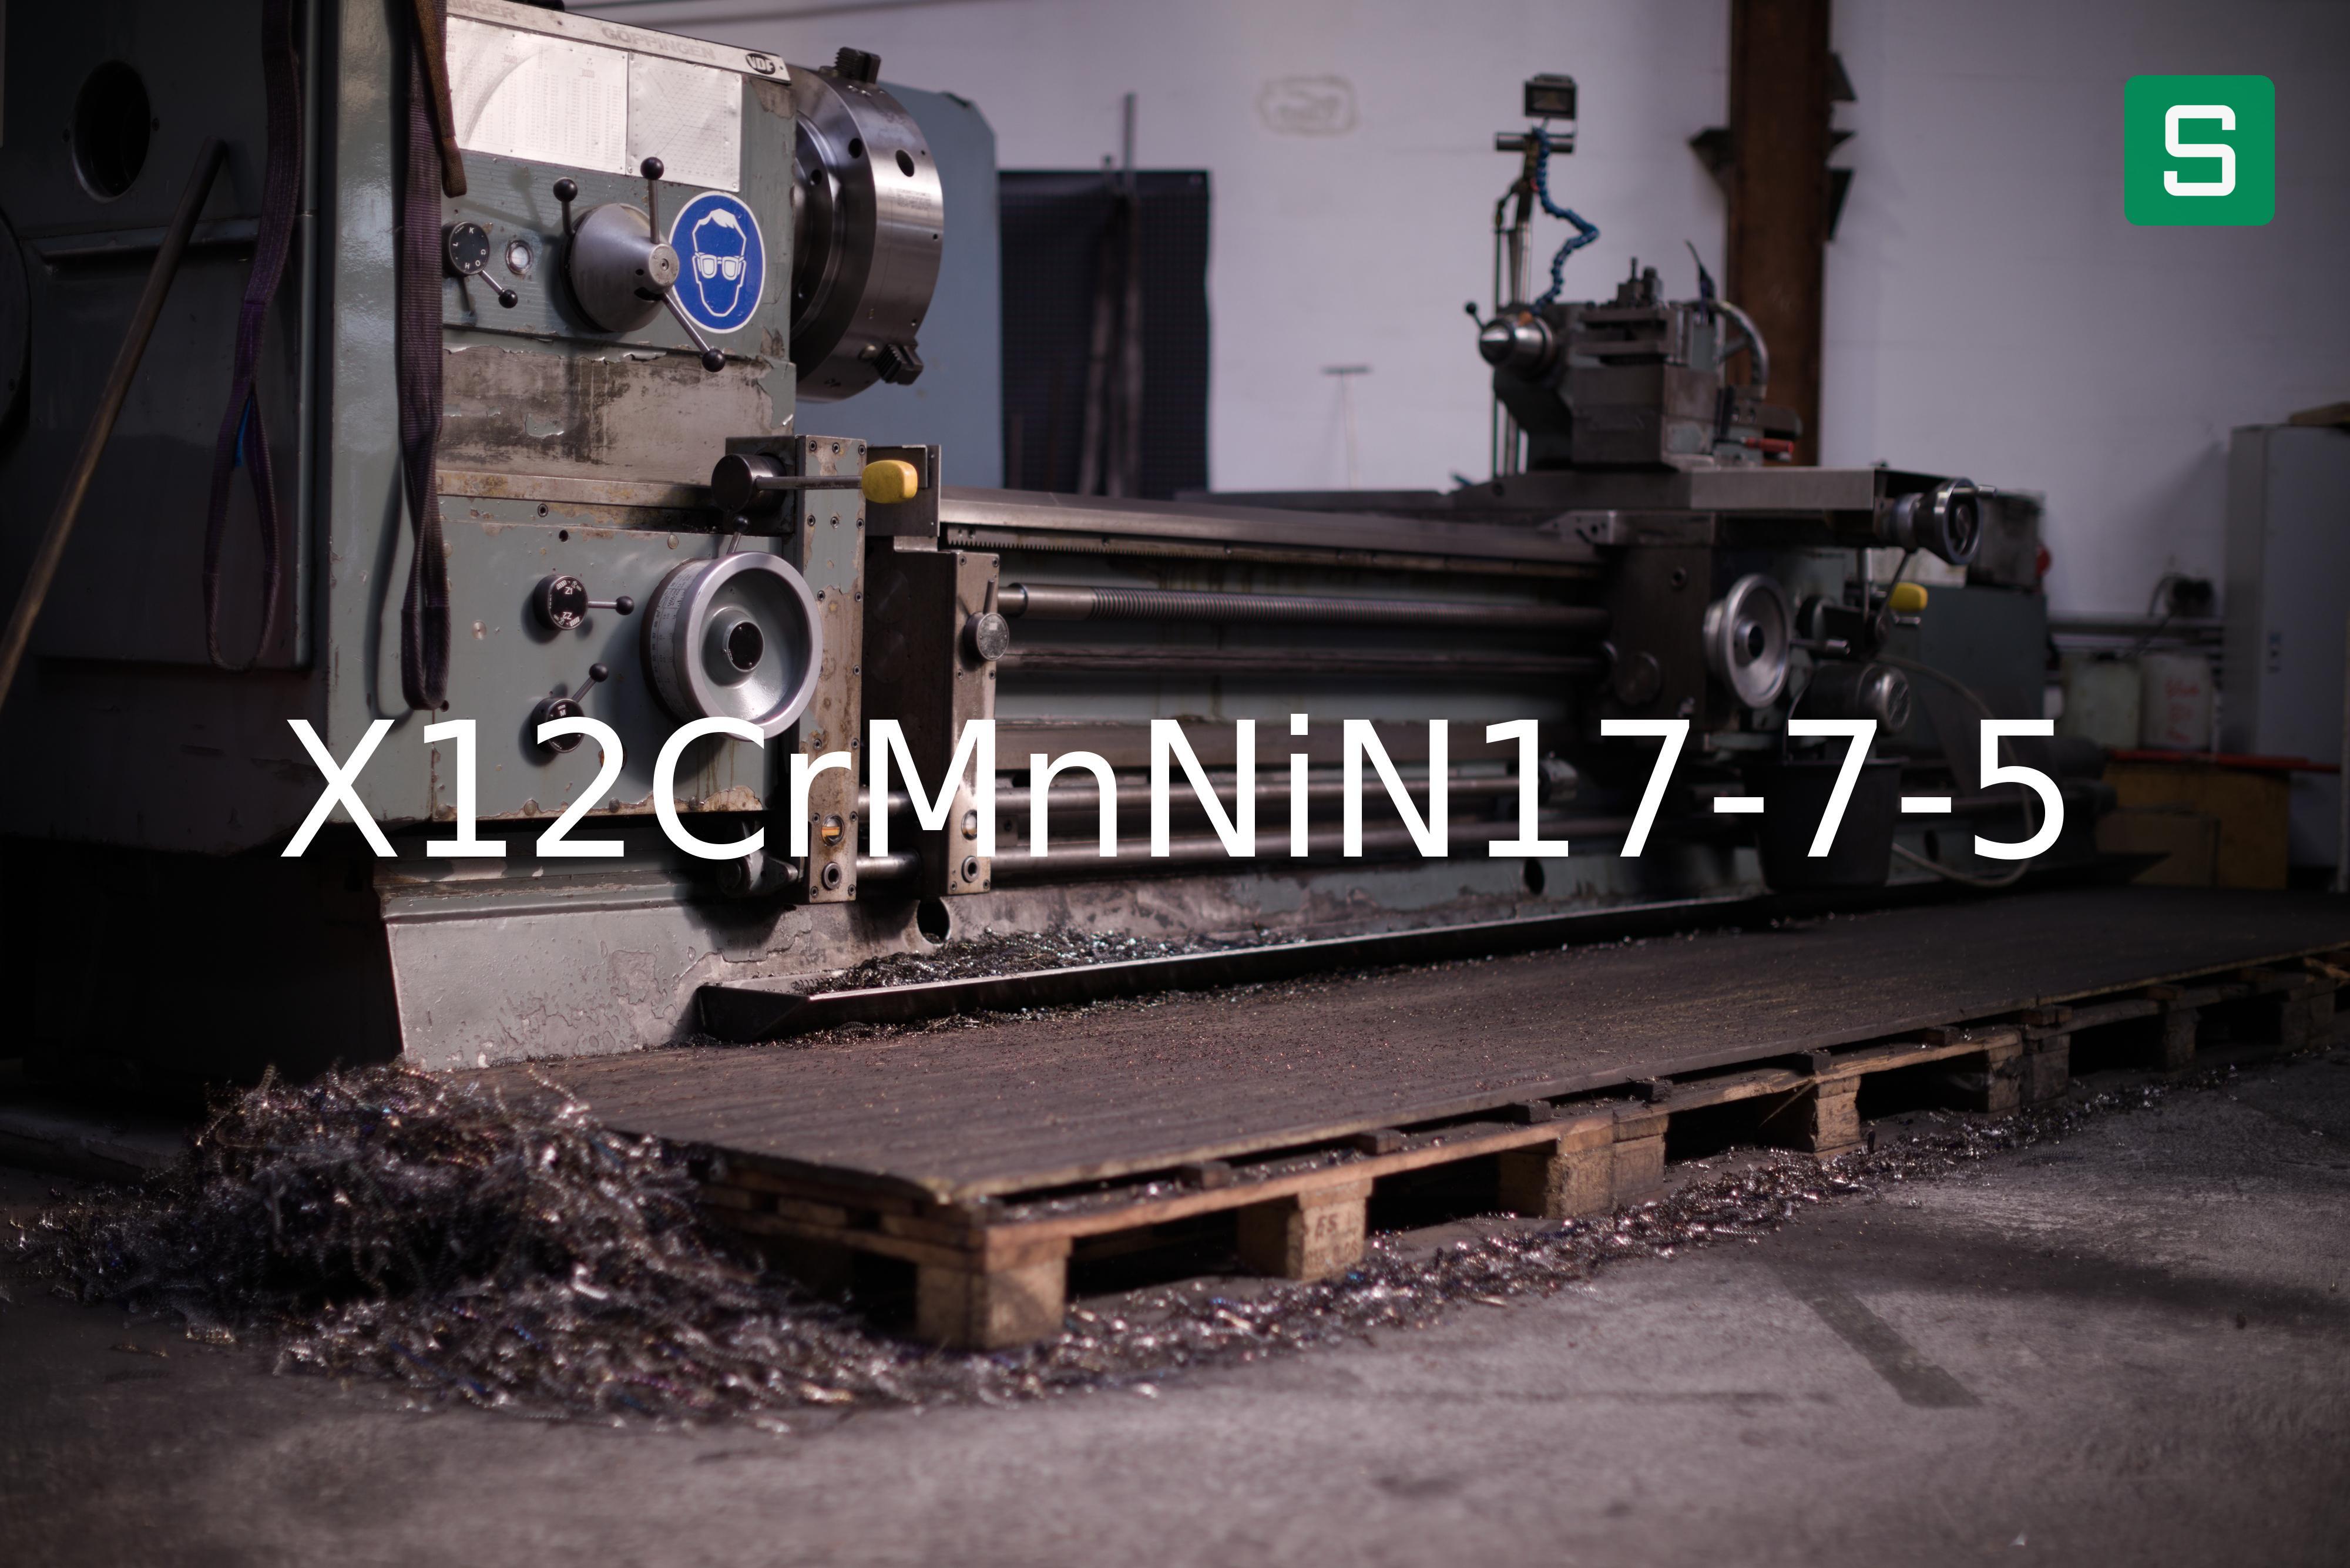 Steel Material: X12CrMnNiN17-7-5